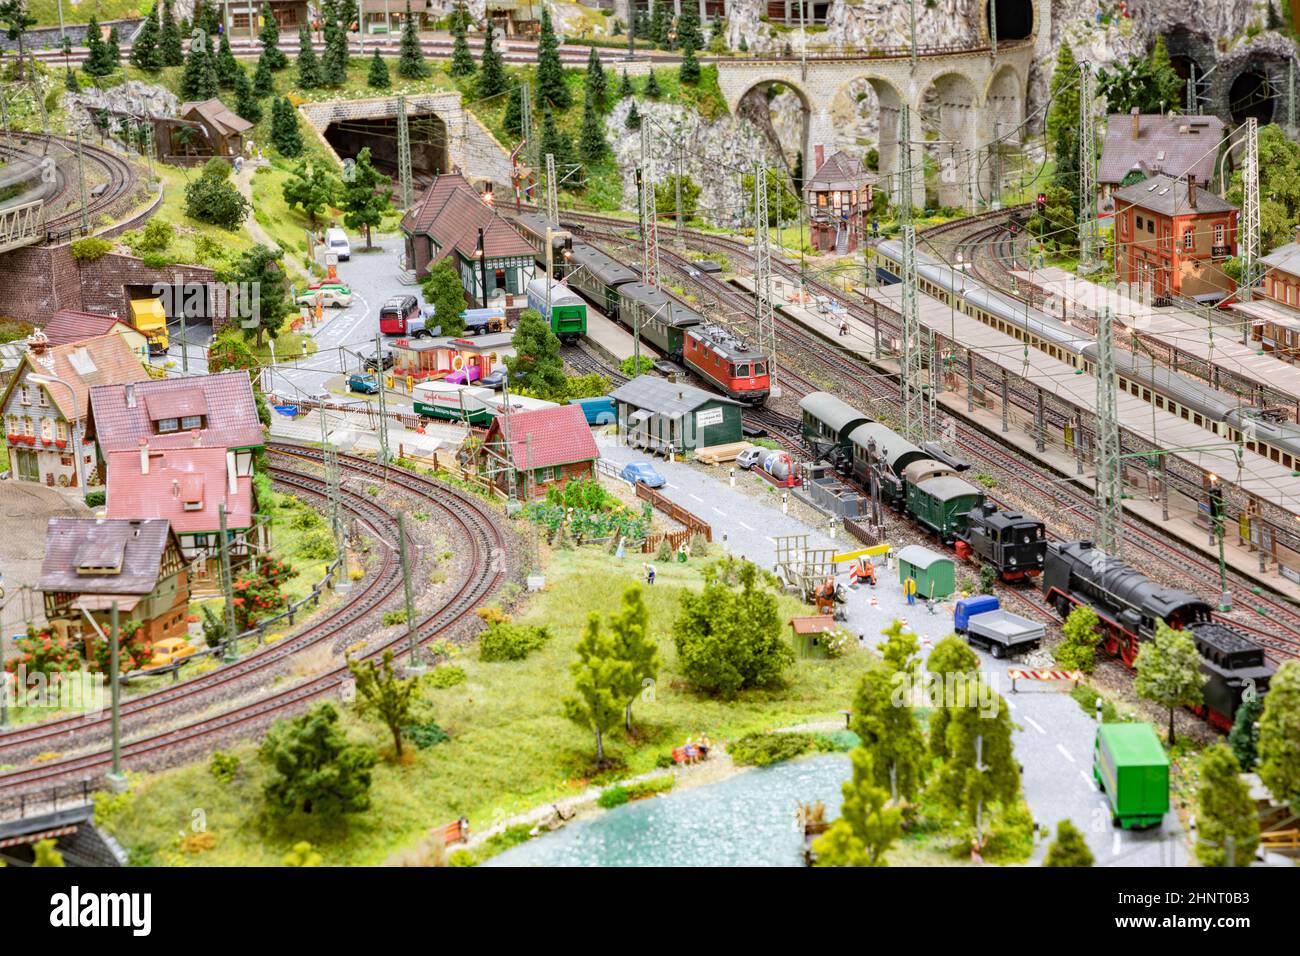 détail du modèle de chemin de fer avec paysage, villages et train d'exploitation Banque D'Images